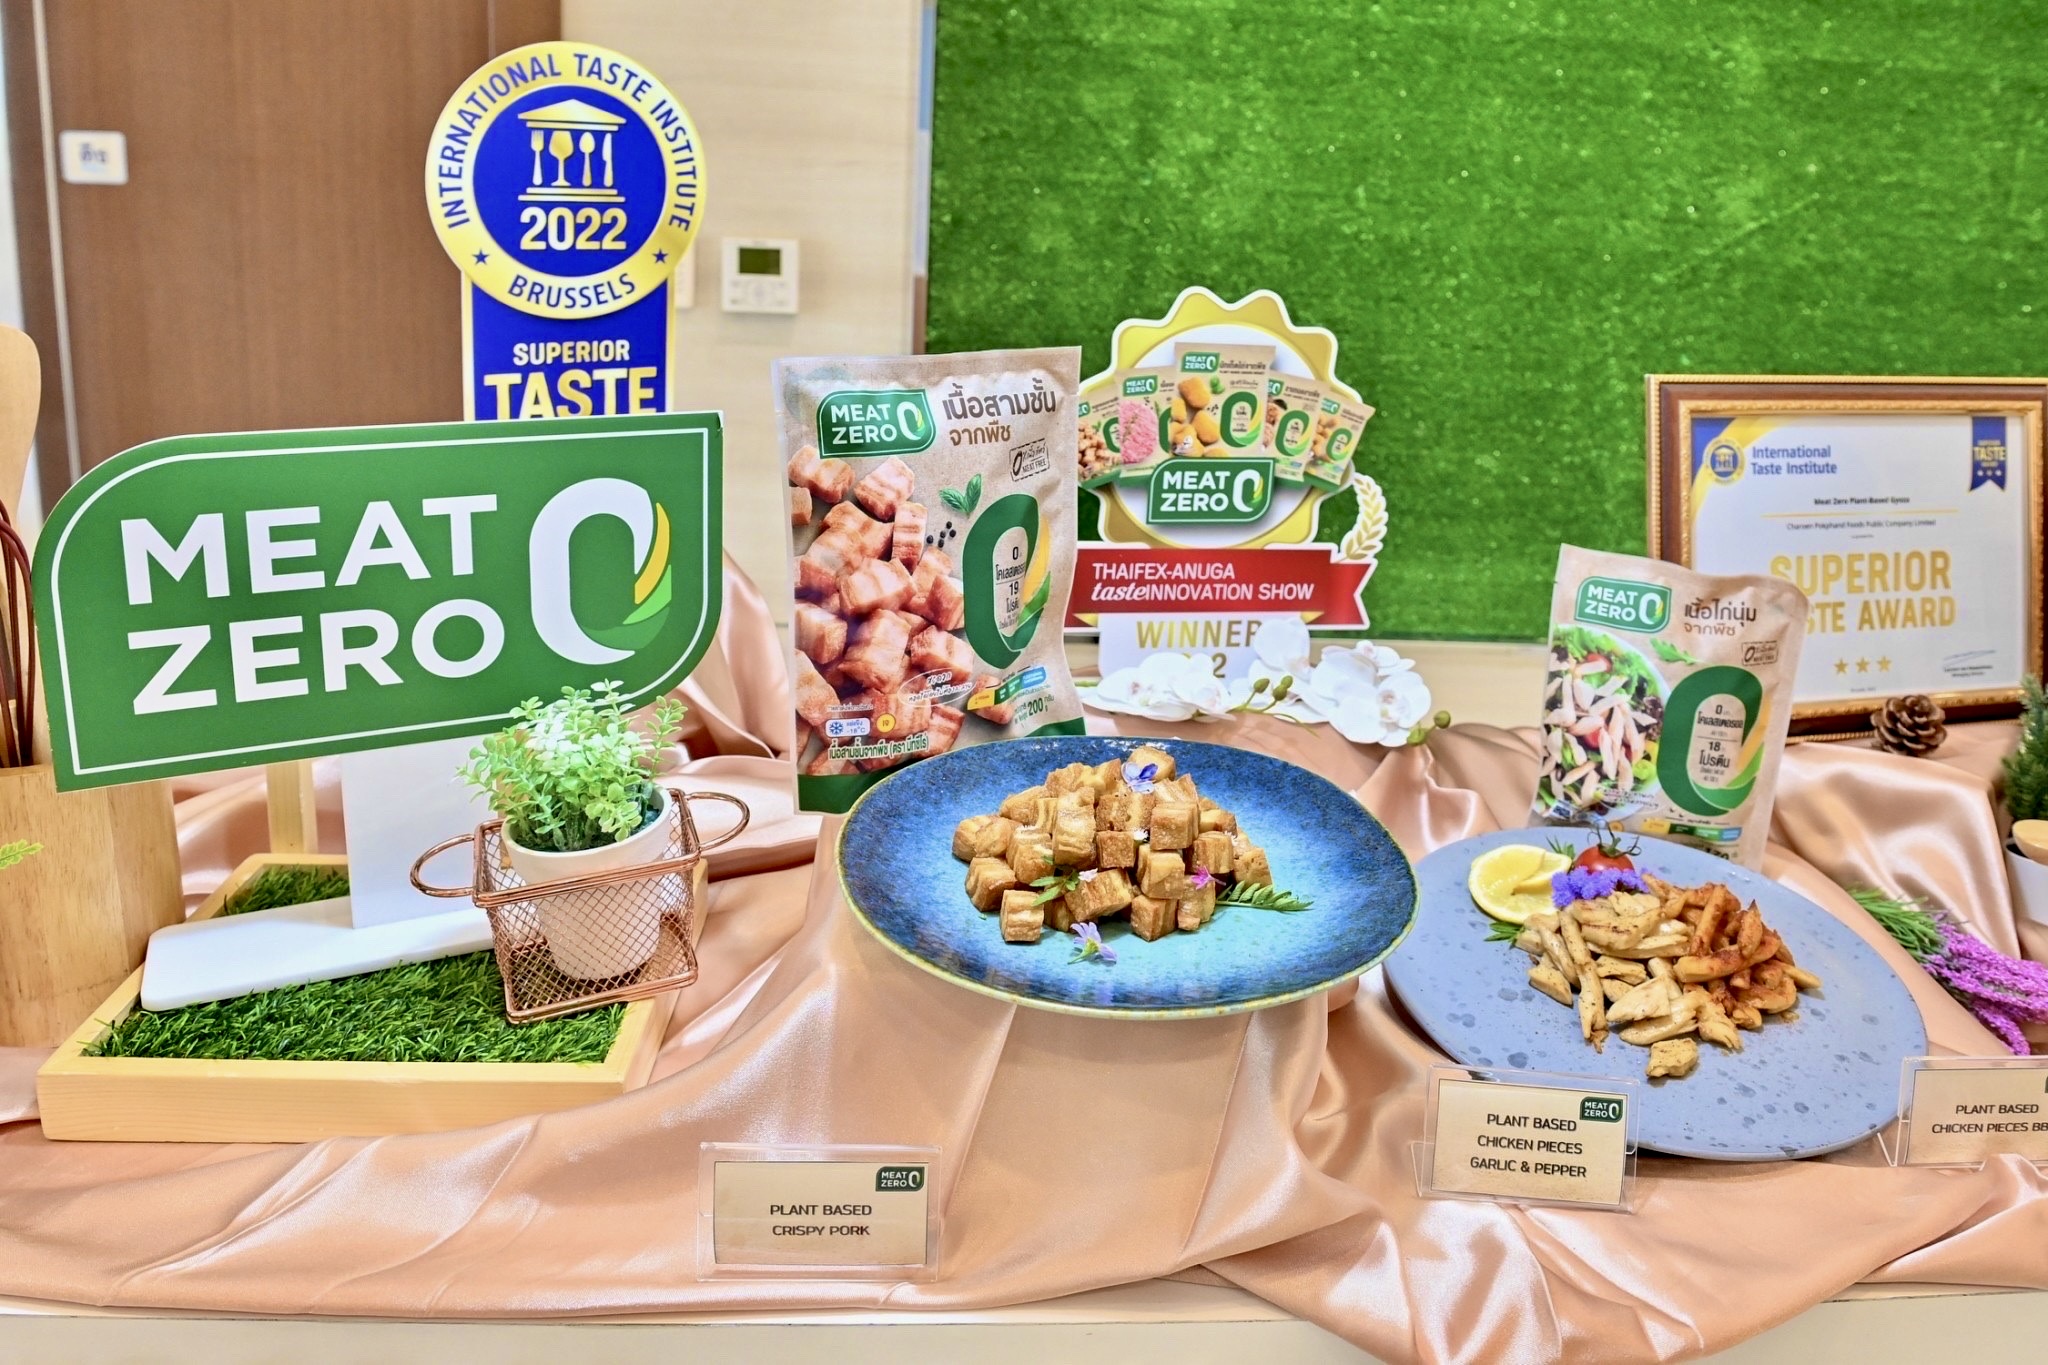 “Meat Zero” ผลิตภัณฑ์เนื้อจากพืช ทางเลือกเพื่อสุขภาพที่ดีช่วงเทศกาลกินเจ